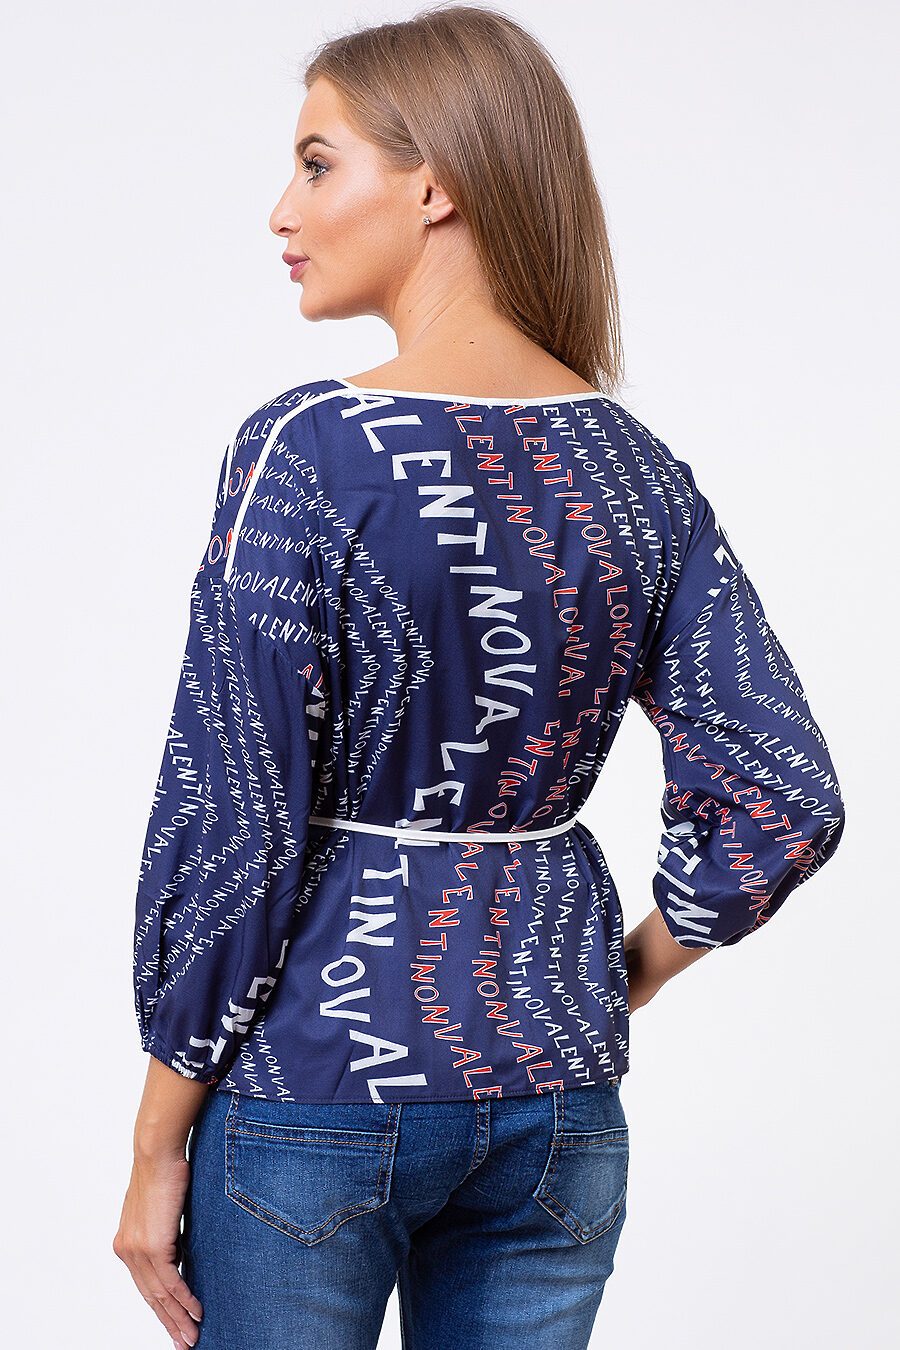 Блуза TUTACHI (125204), купить в Moyo.moda